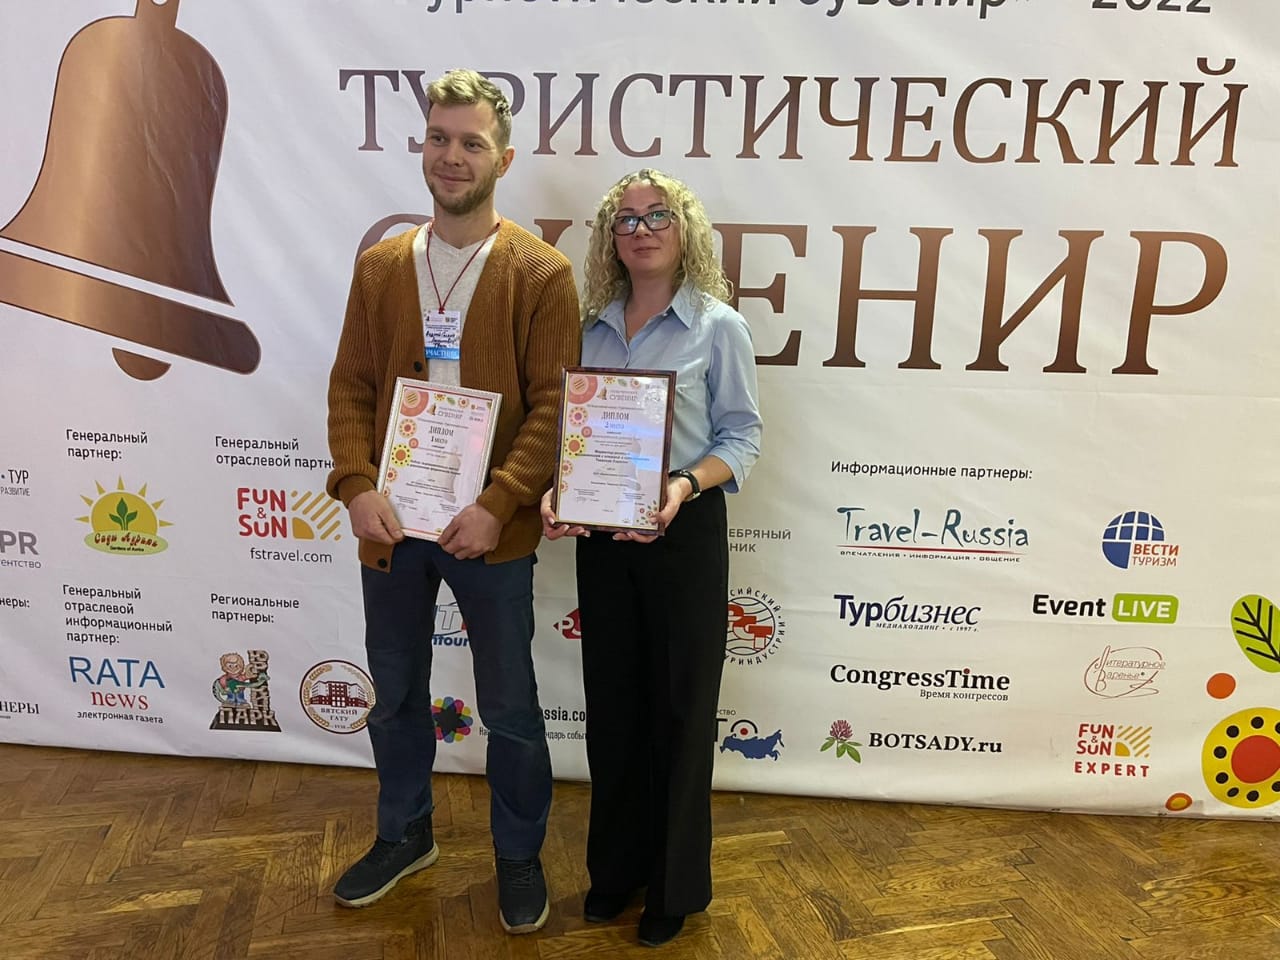 2-е место в финале Всероссийского конкурса "Туристический сувенир"! 